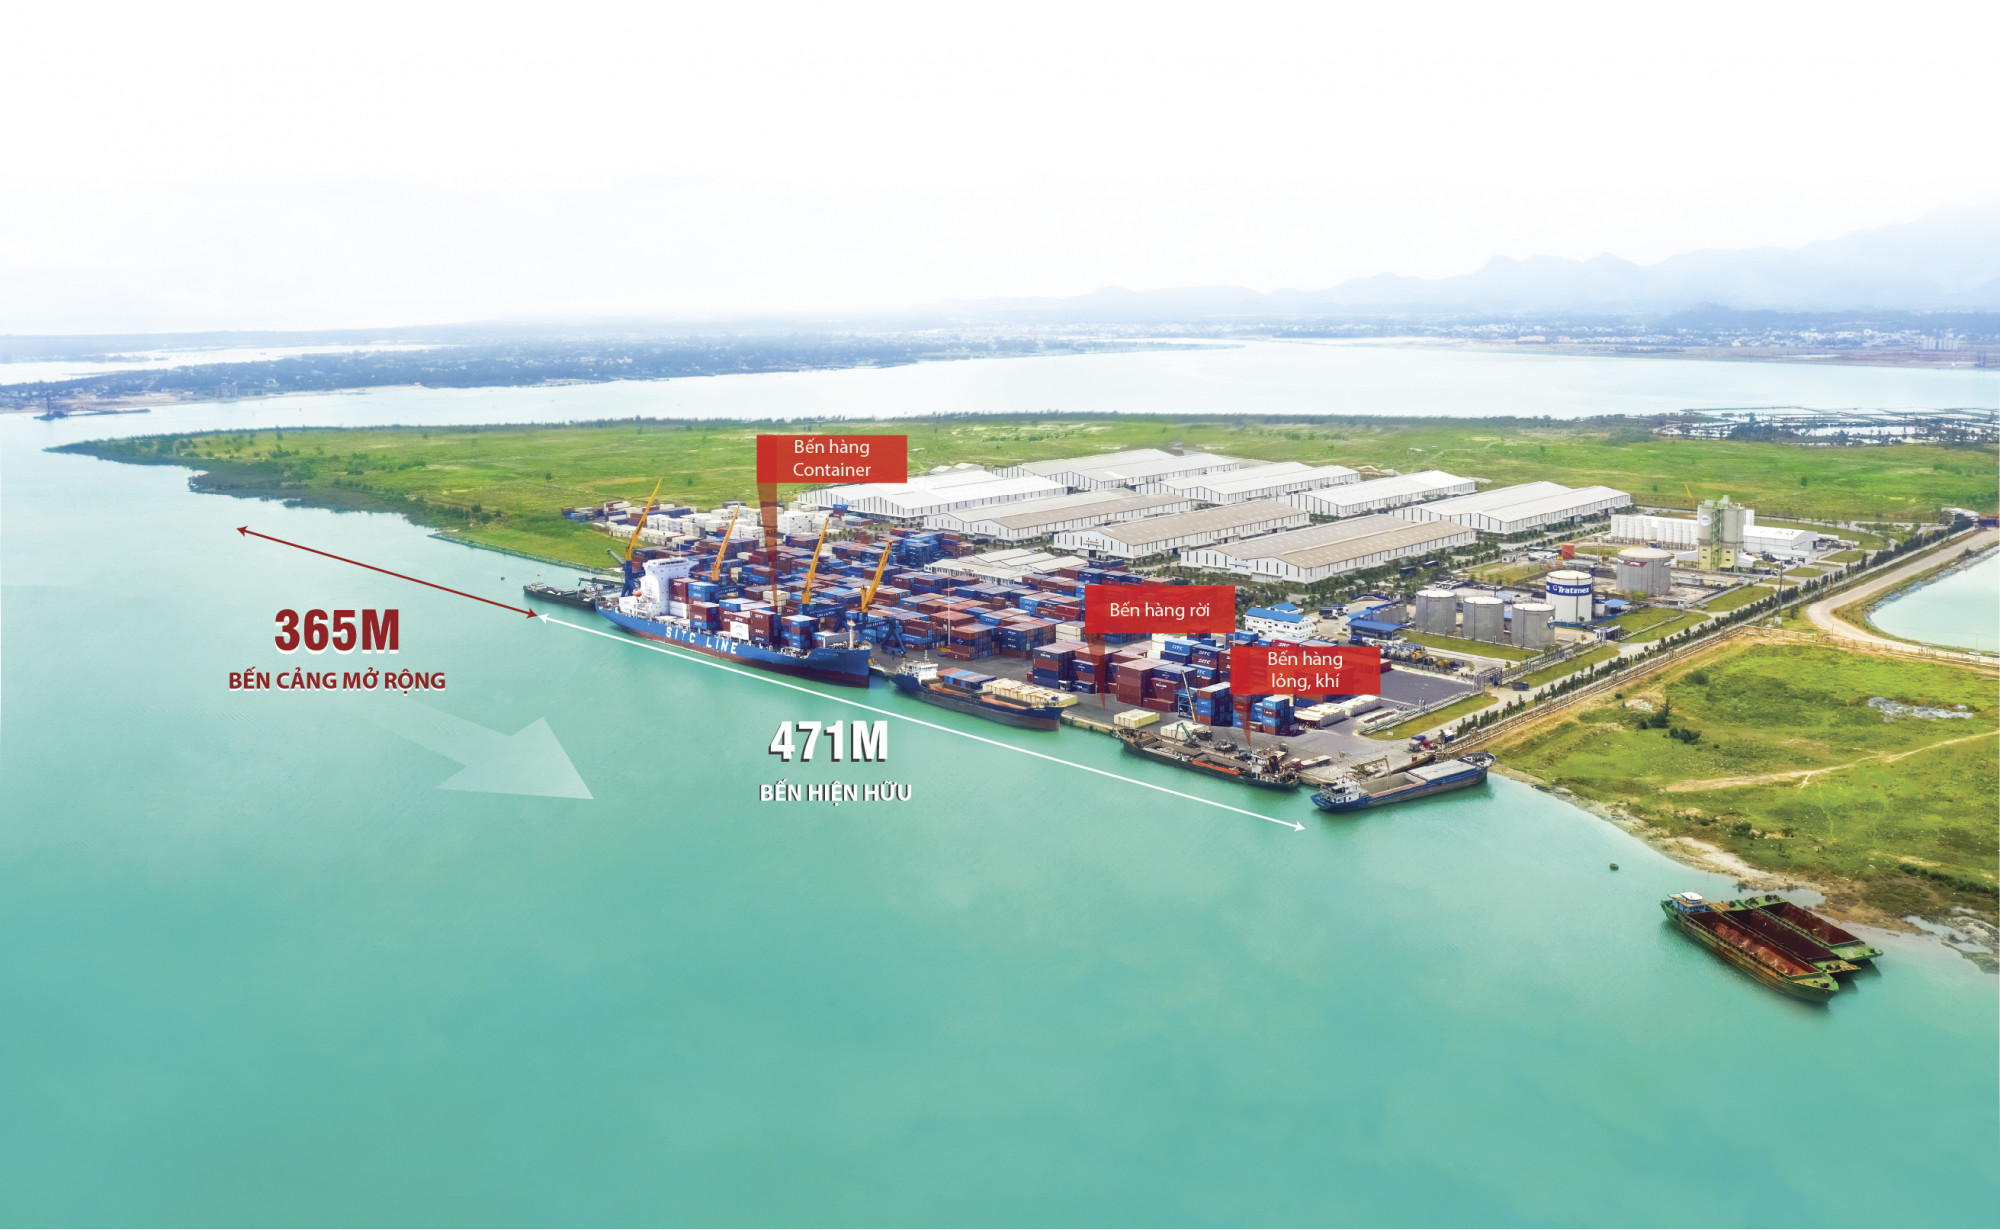 Cảng Chu Lai đã hoàn thiện hồ sơ thủ tục để xây dựng bến cảng mới đón tàu 5 vạn tấn